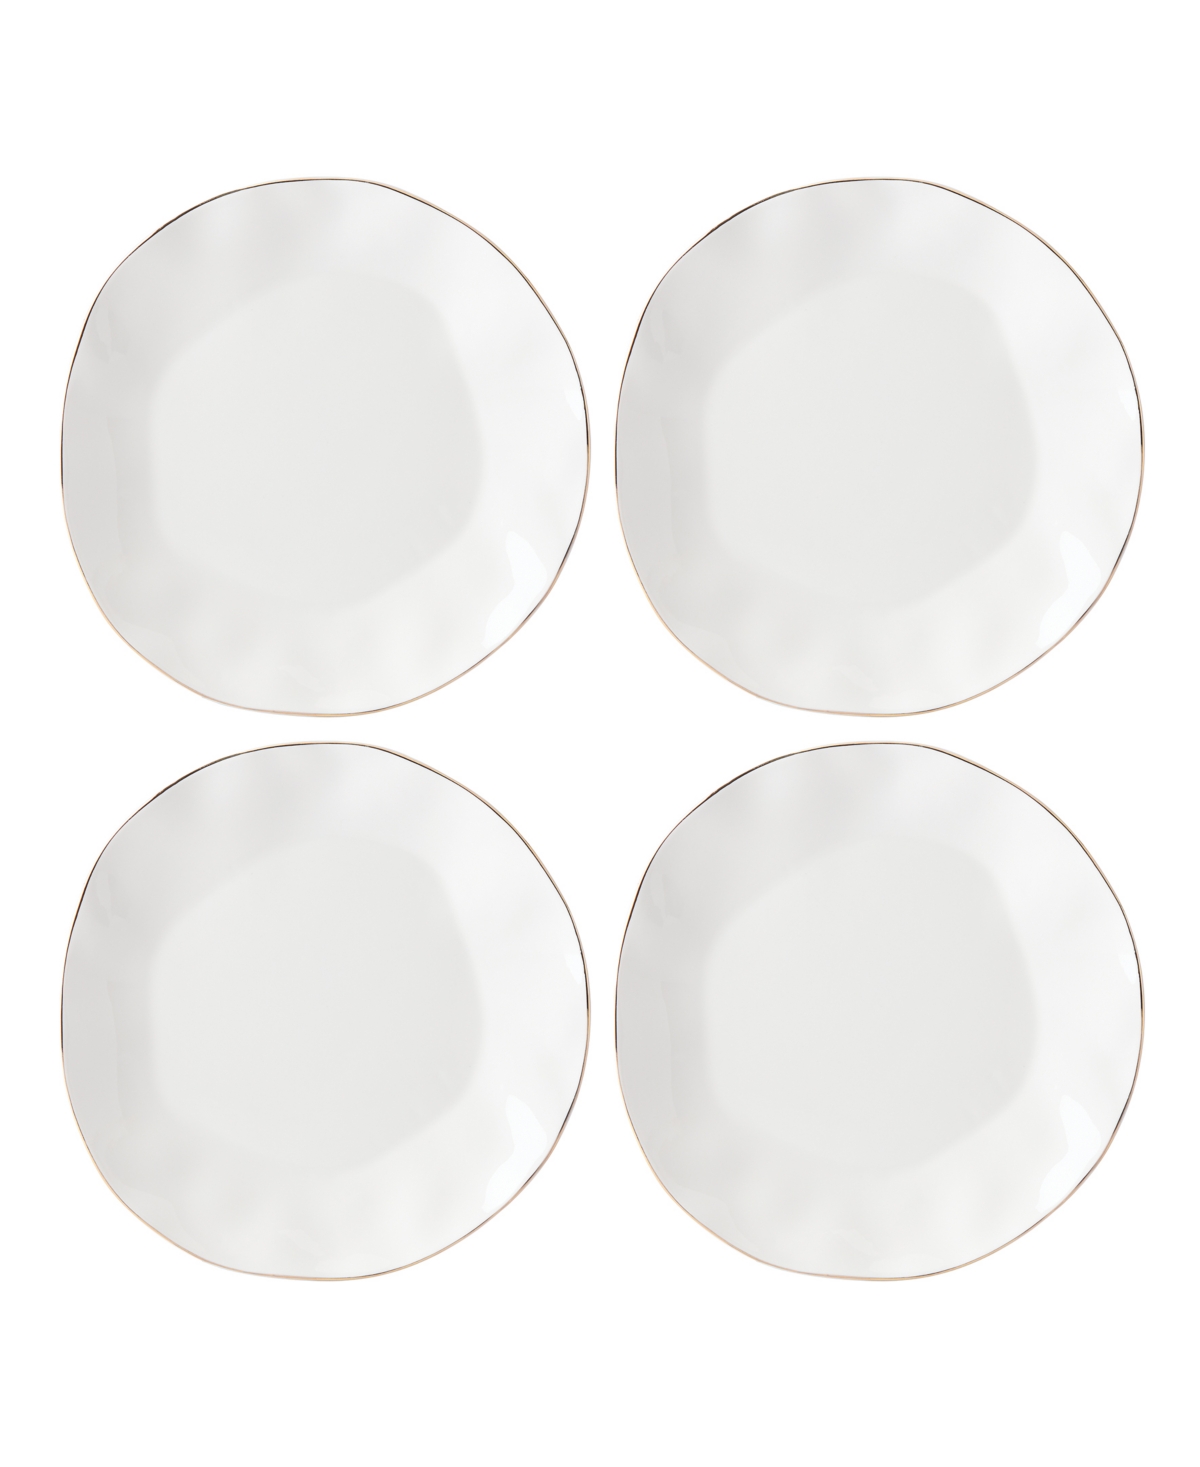 Blue Bay Dinner Plate Set/4 White - White